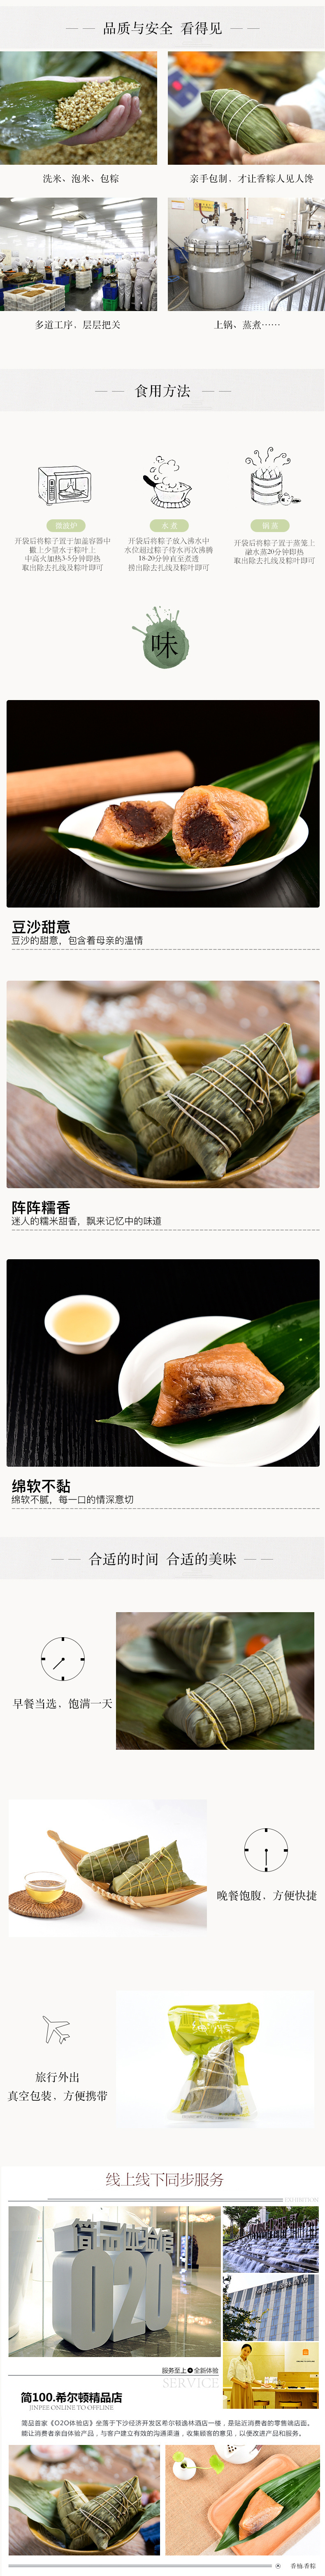 淘宝美工诺夏中国风端午节粽子豆沙大米传统食品食物详情页作品